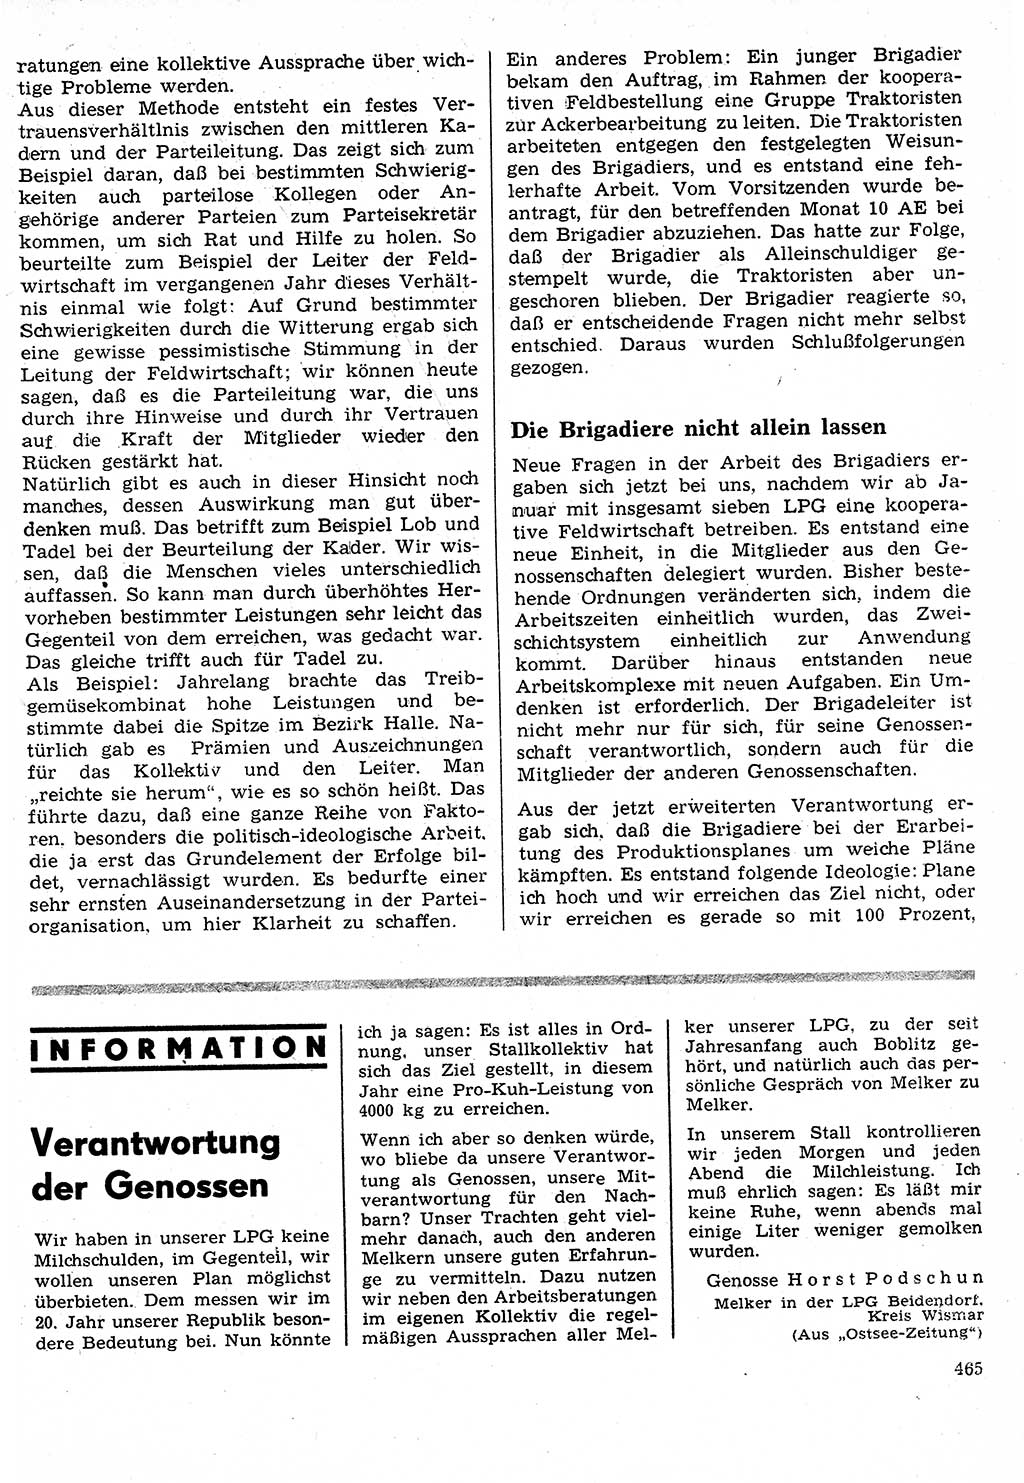 Neuer Weg (NW), Organ des Zentralkomitees (ZK) der SED (Sozialistische Einheitspartei Deutschlands) für Fragen des Parteilebens, 24. Jahrgang [Deutsche Demokratische Republik (DDR)] 1969, Seite 465 (NW ZK SED DDR 1969, S. 465)